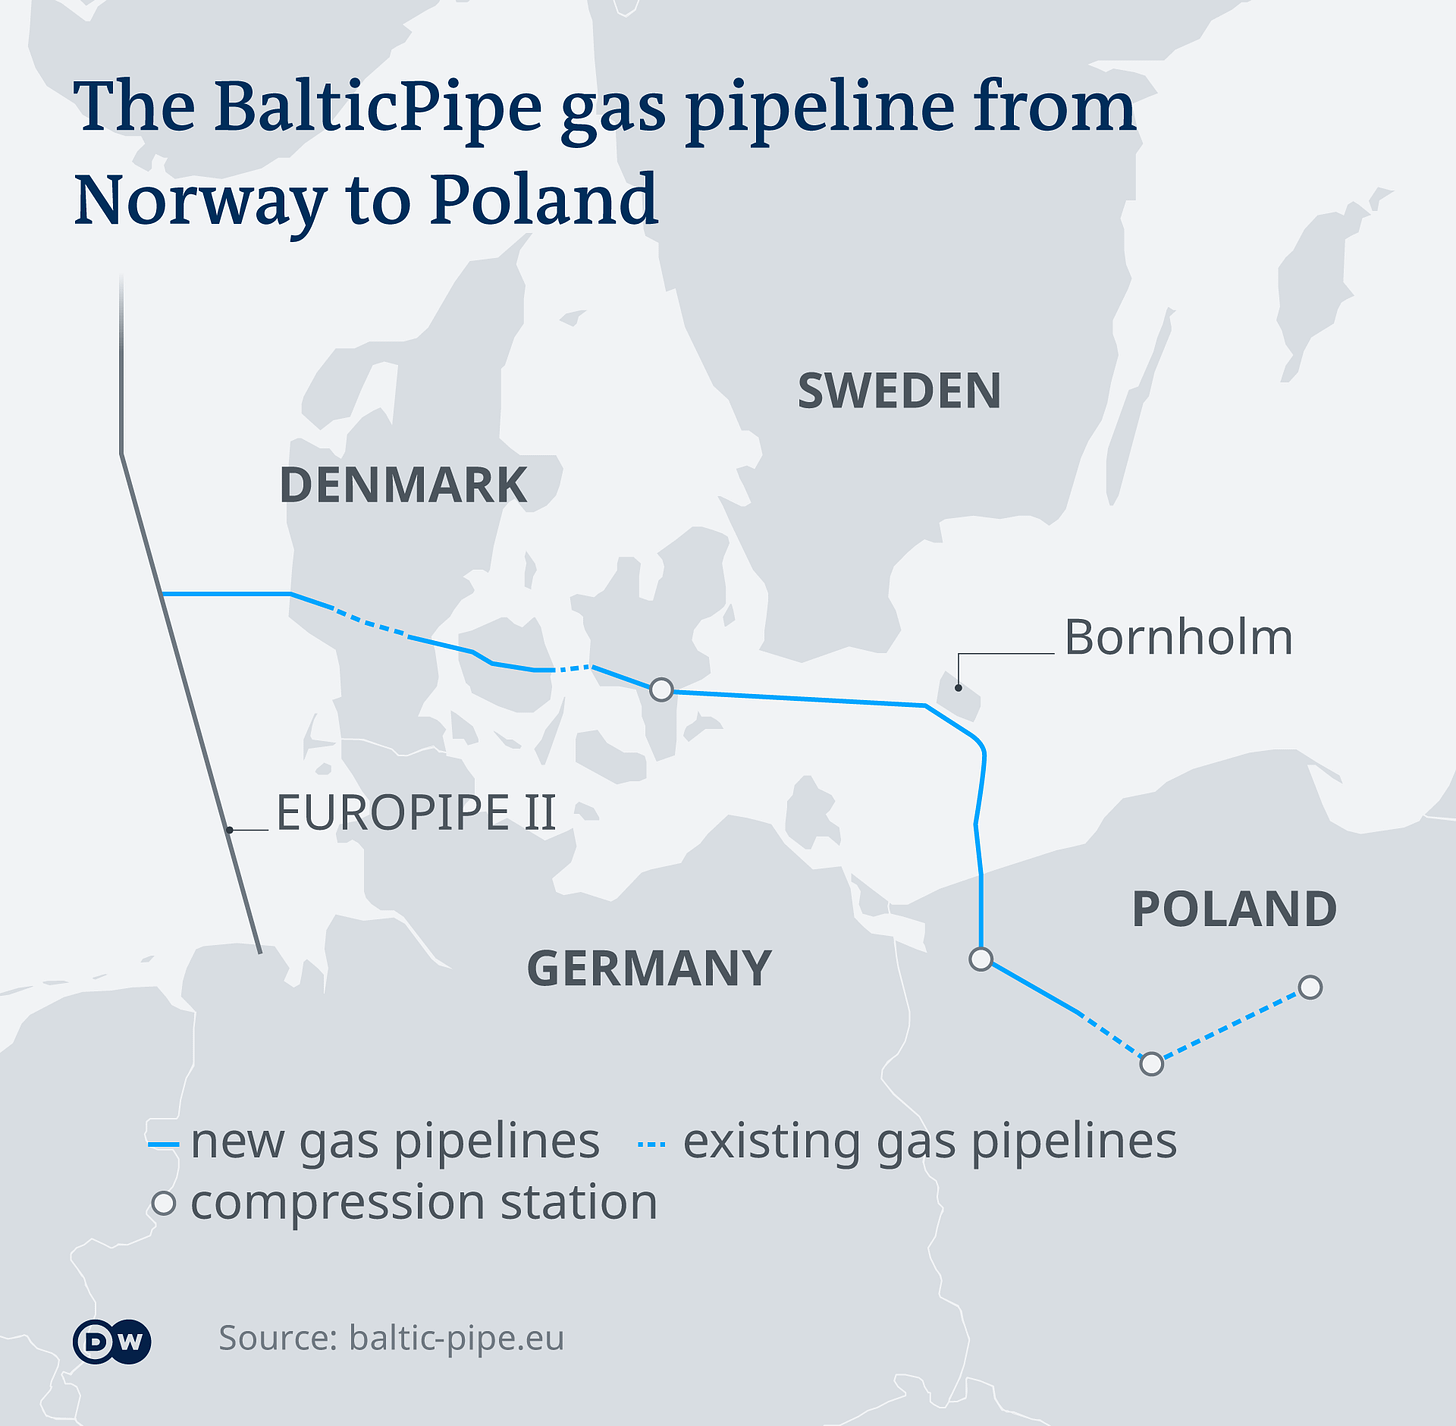 Aleix Amorós on Twitter: "Otro proyecto que avanza para hacerse hueco, y  que se espera que esté operativo a finales de 2022, es el Baltic Pipe, un  gasoducto que conectará Dinamarca 🇩🇰